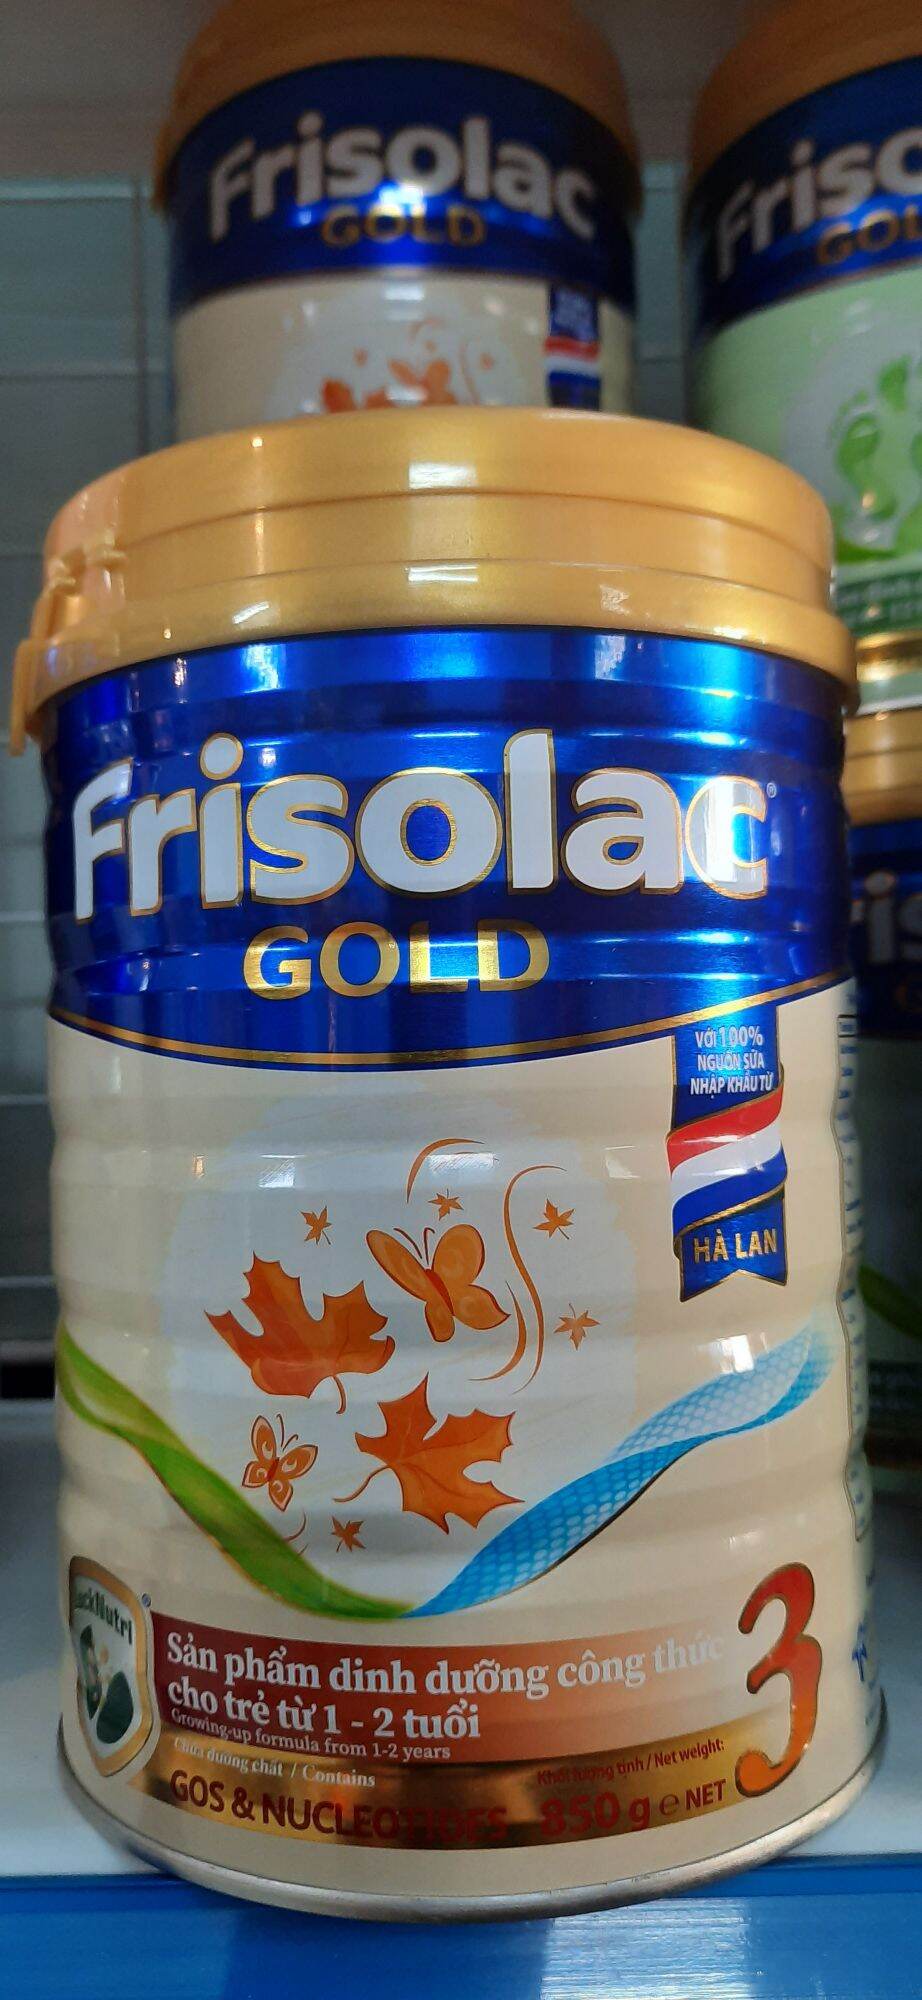 Hộp sữa Frisolac Gold 3 1,4kg. Sản phẩm dinh dưỡng cho trẻ từ 1-2 tuổi